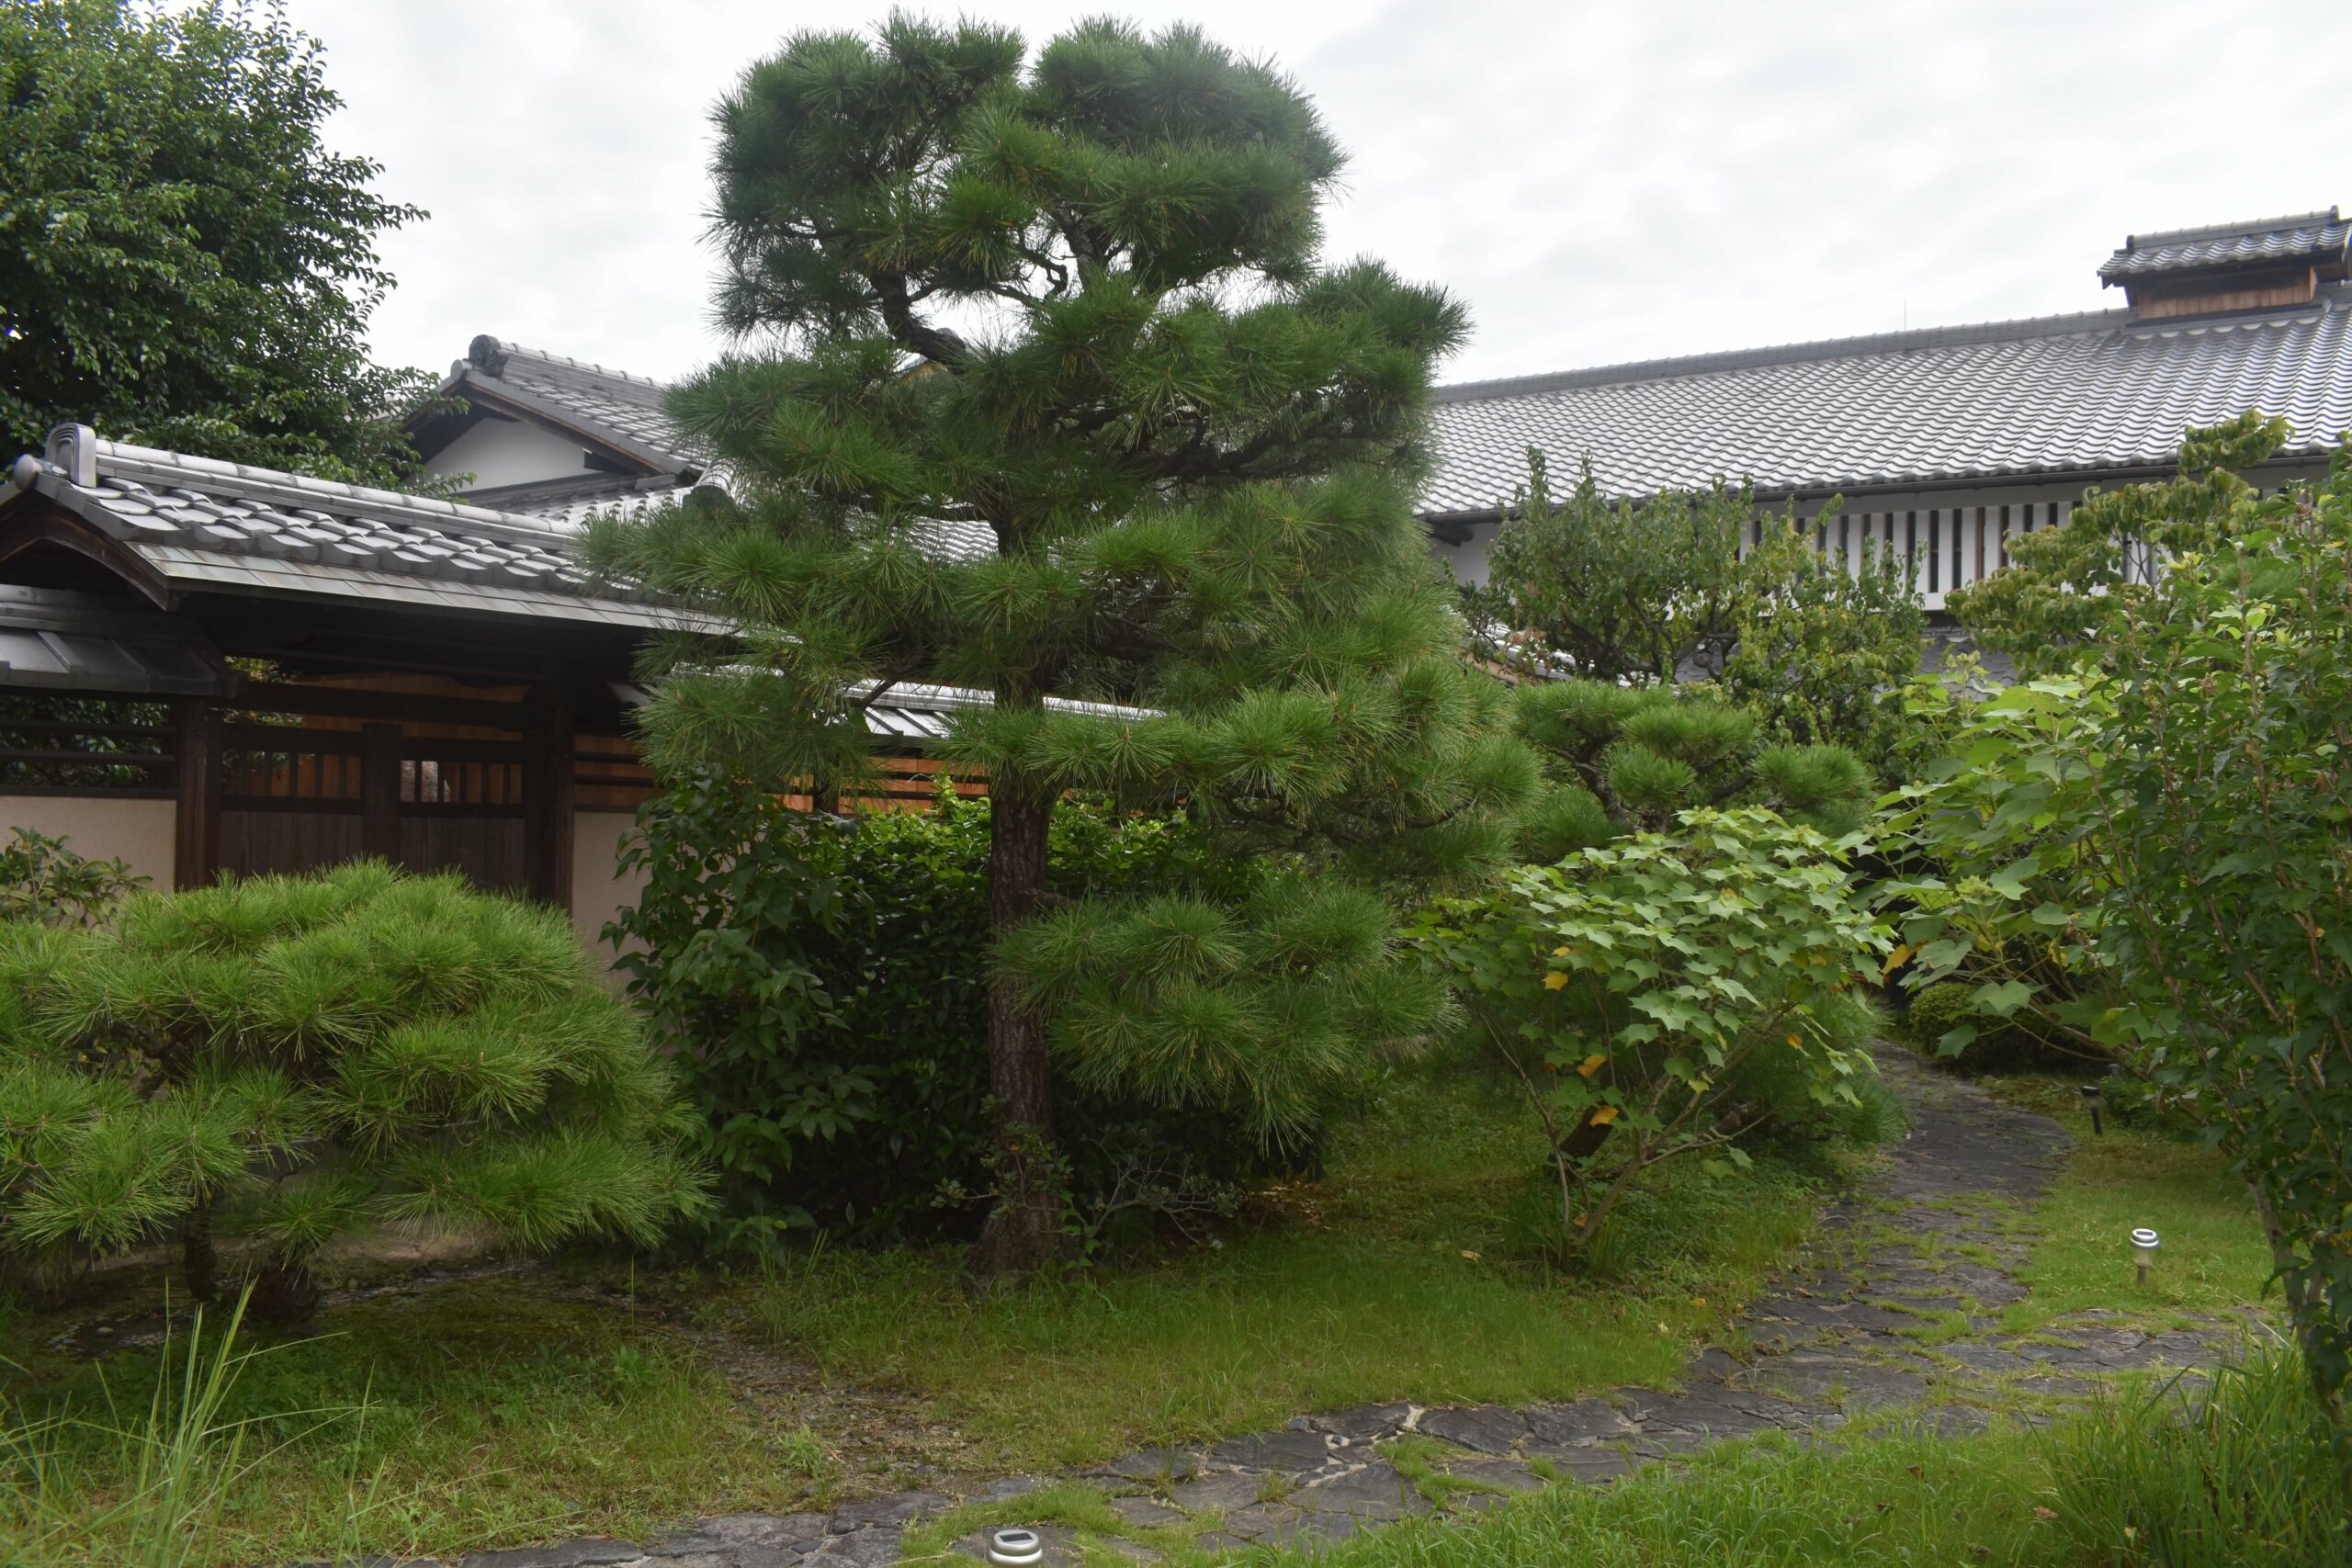 photoPanoramic view of Hasegawa House